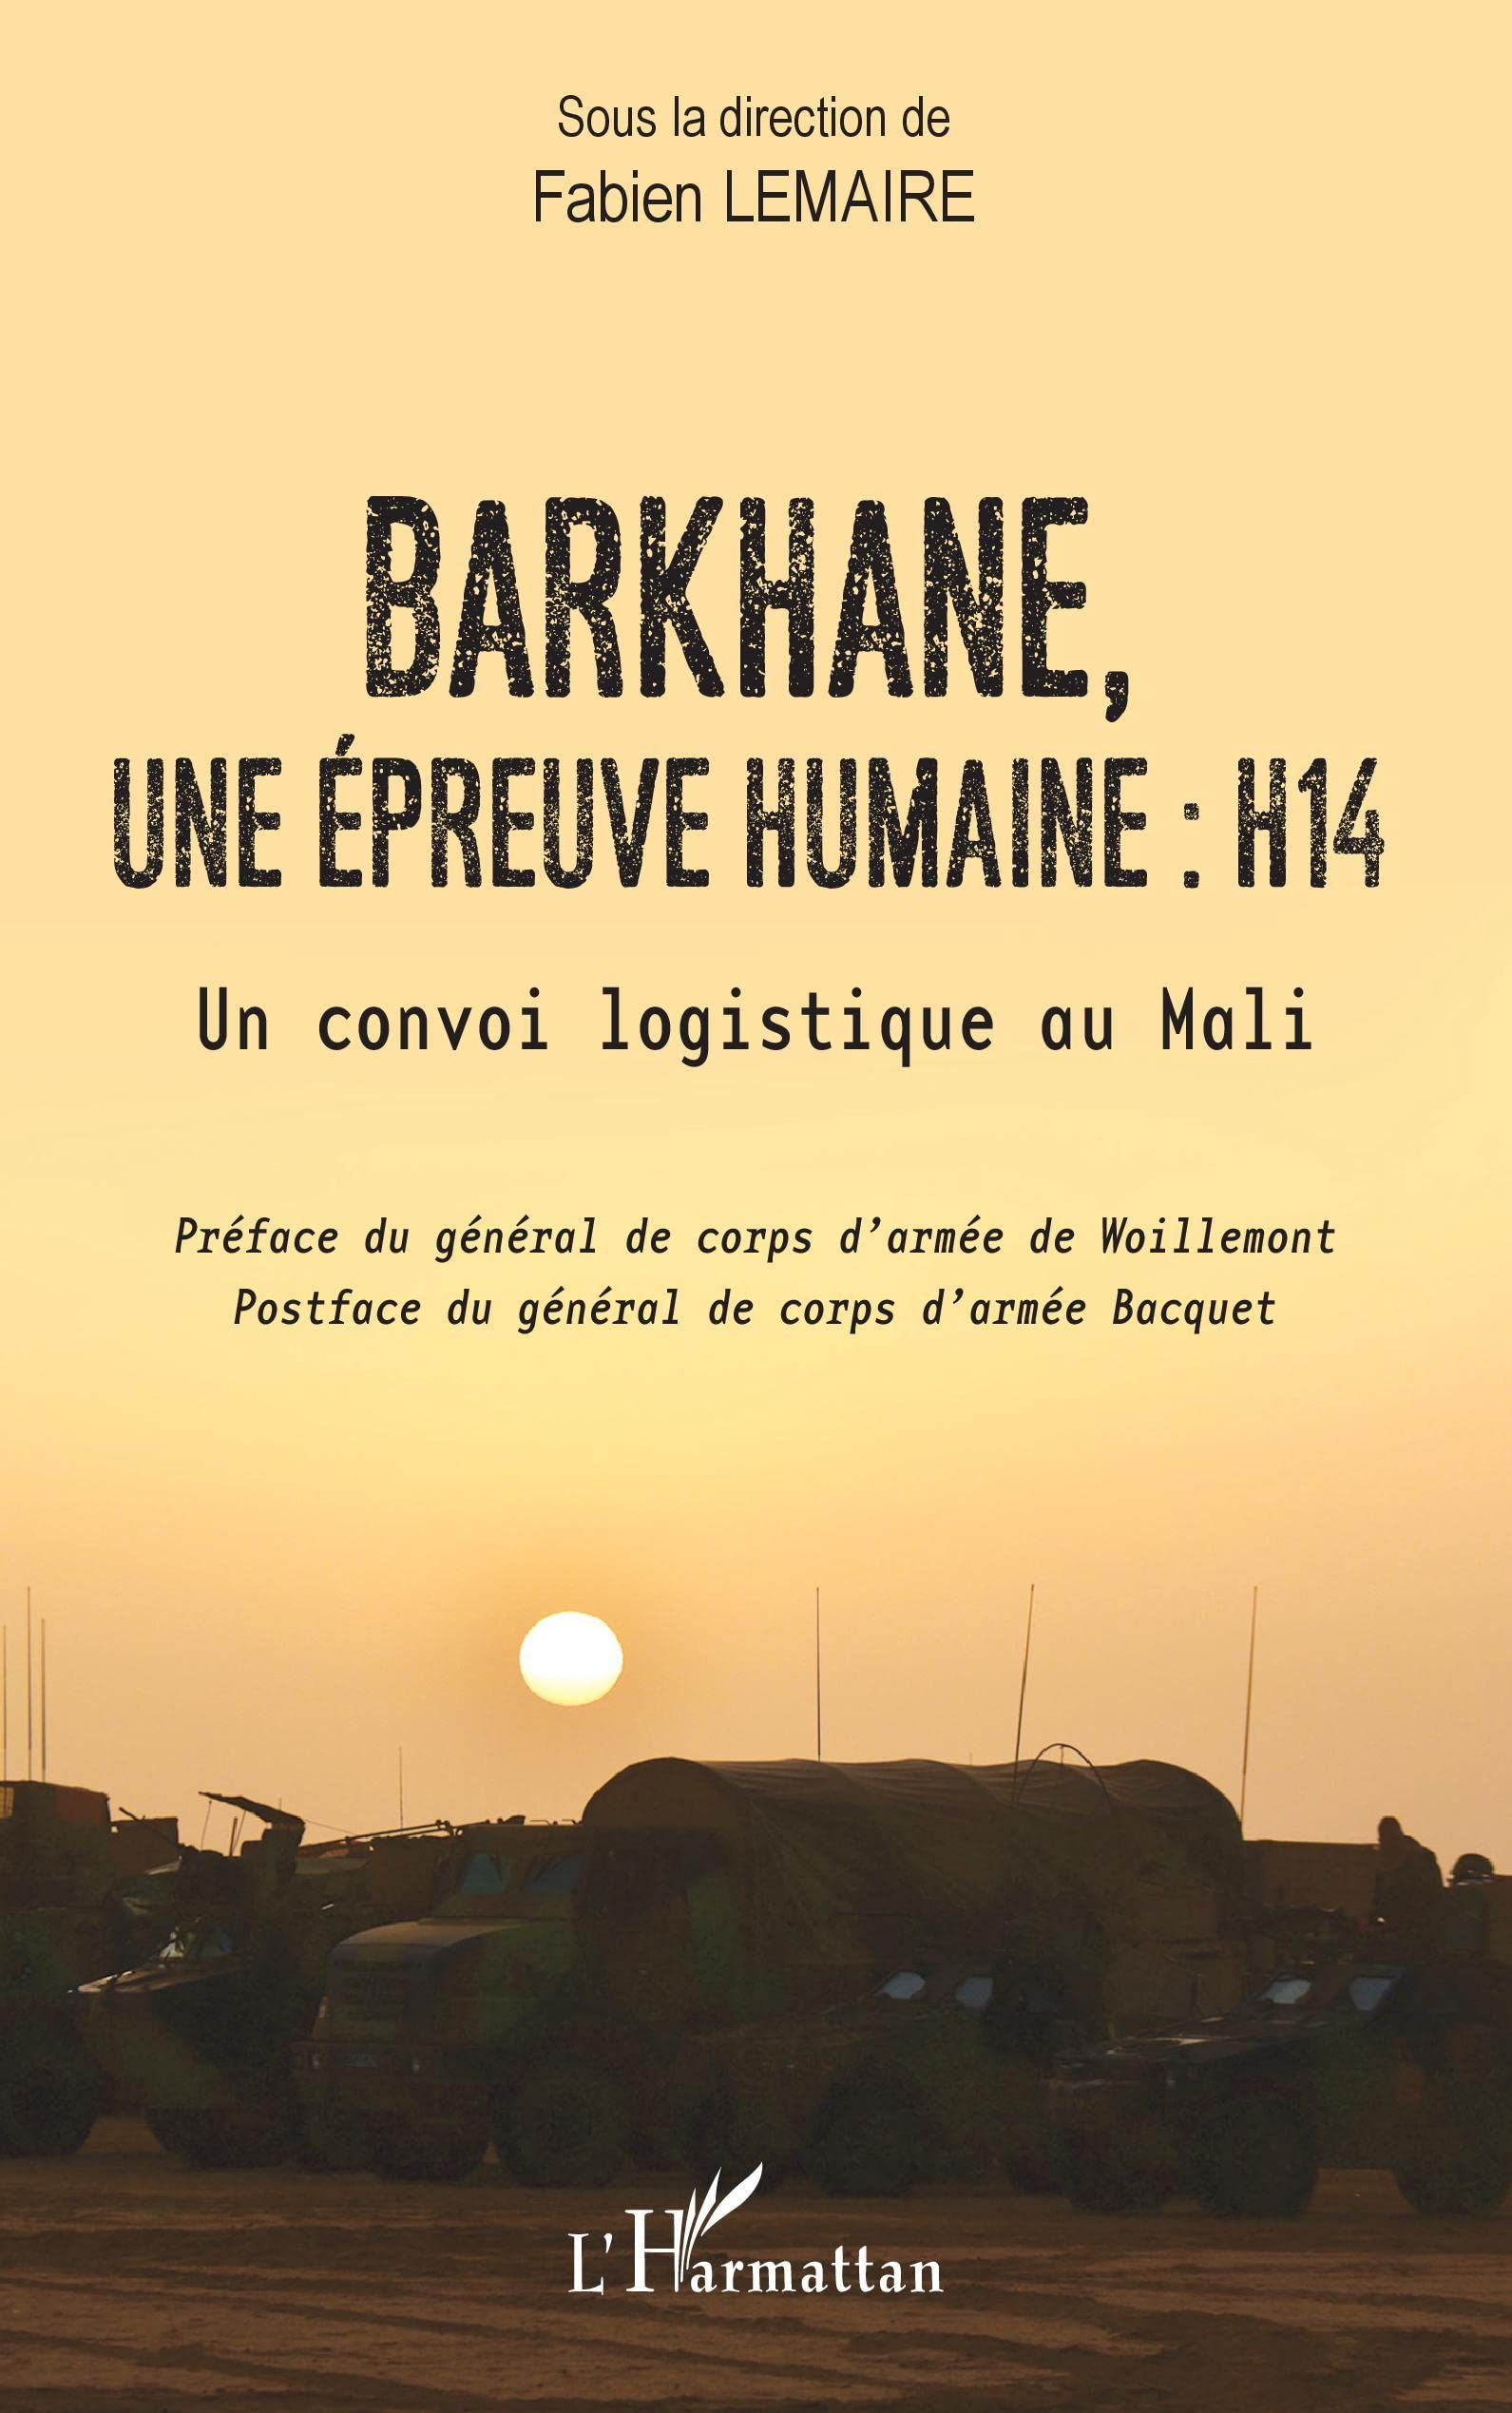 Barkhane, une épreuve humaine, H14 : un convoi logistique au Mali